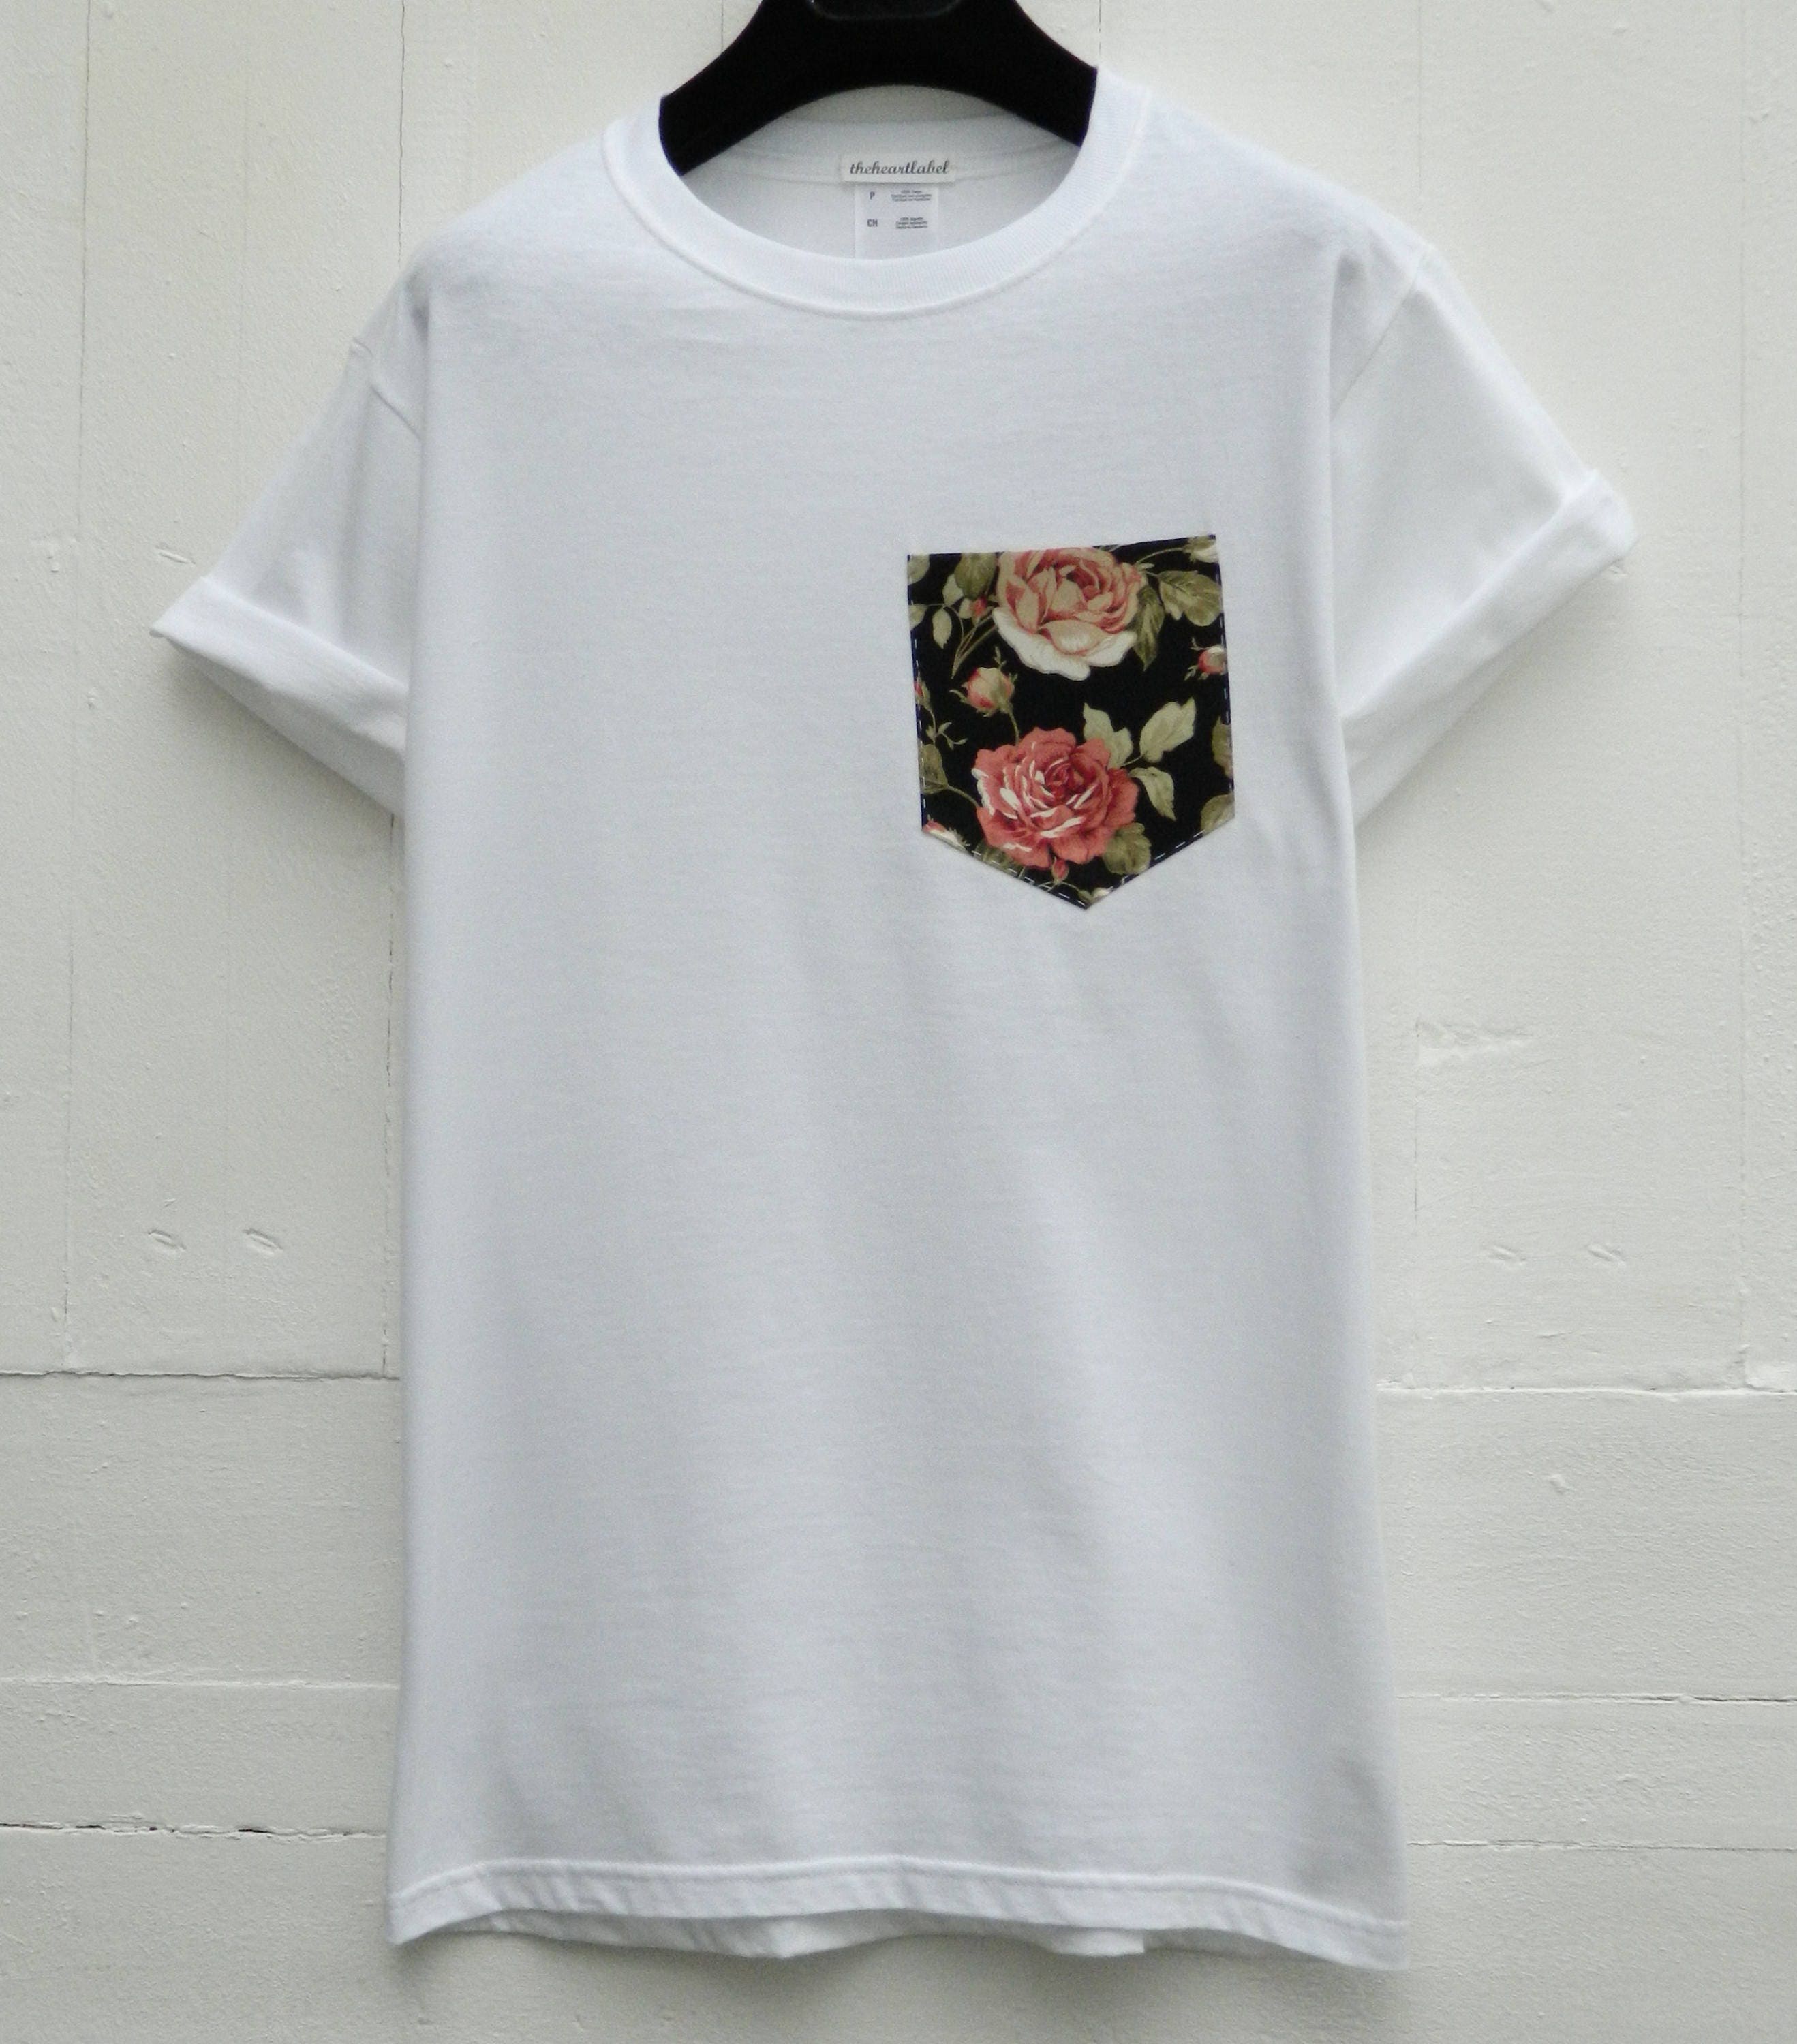 Pocket T-shirt Floral Roses Pattern Pocket Tee Men's | Etsy UK